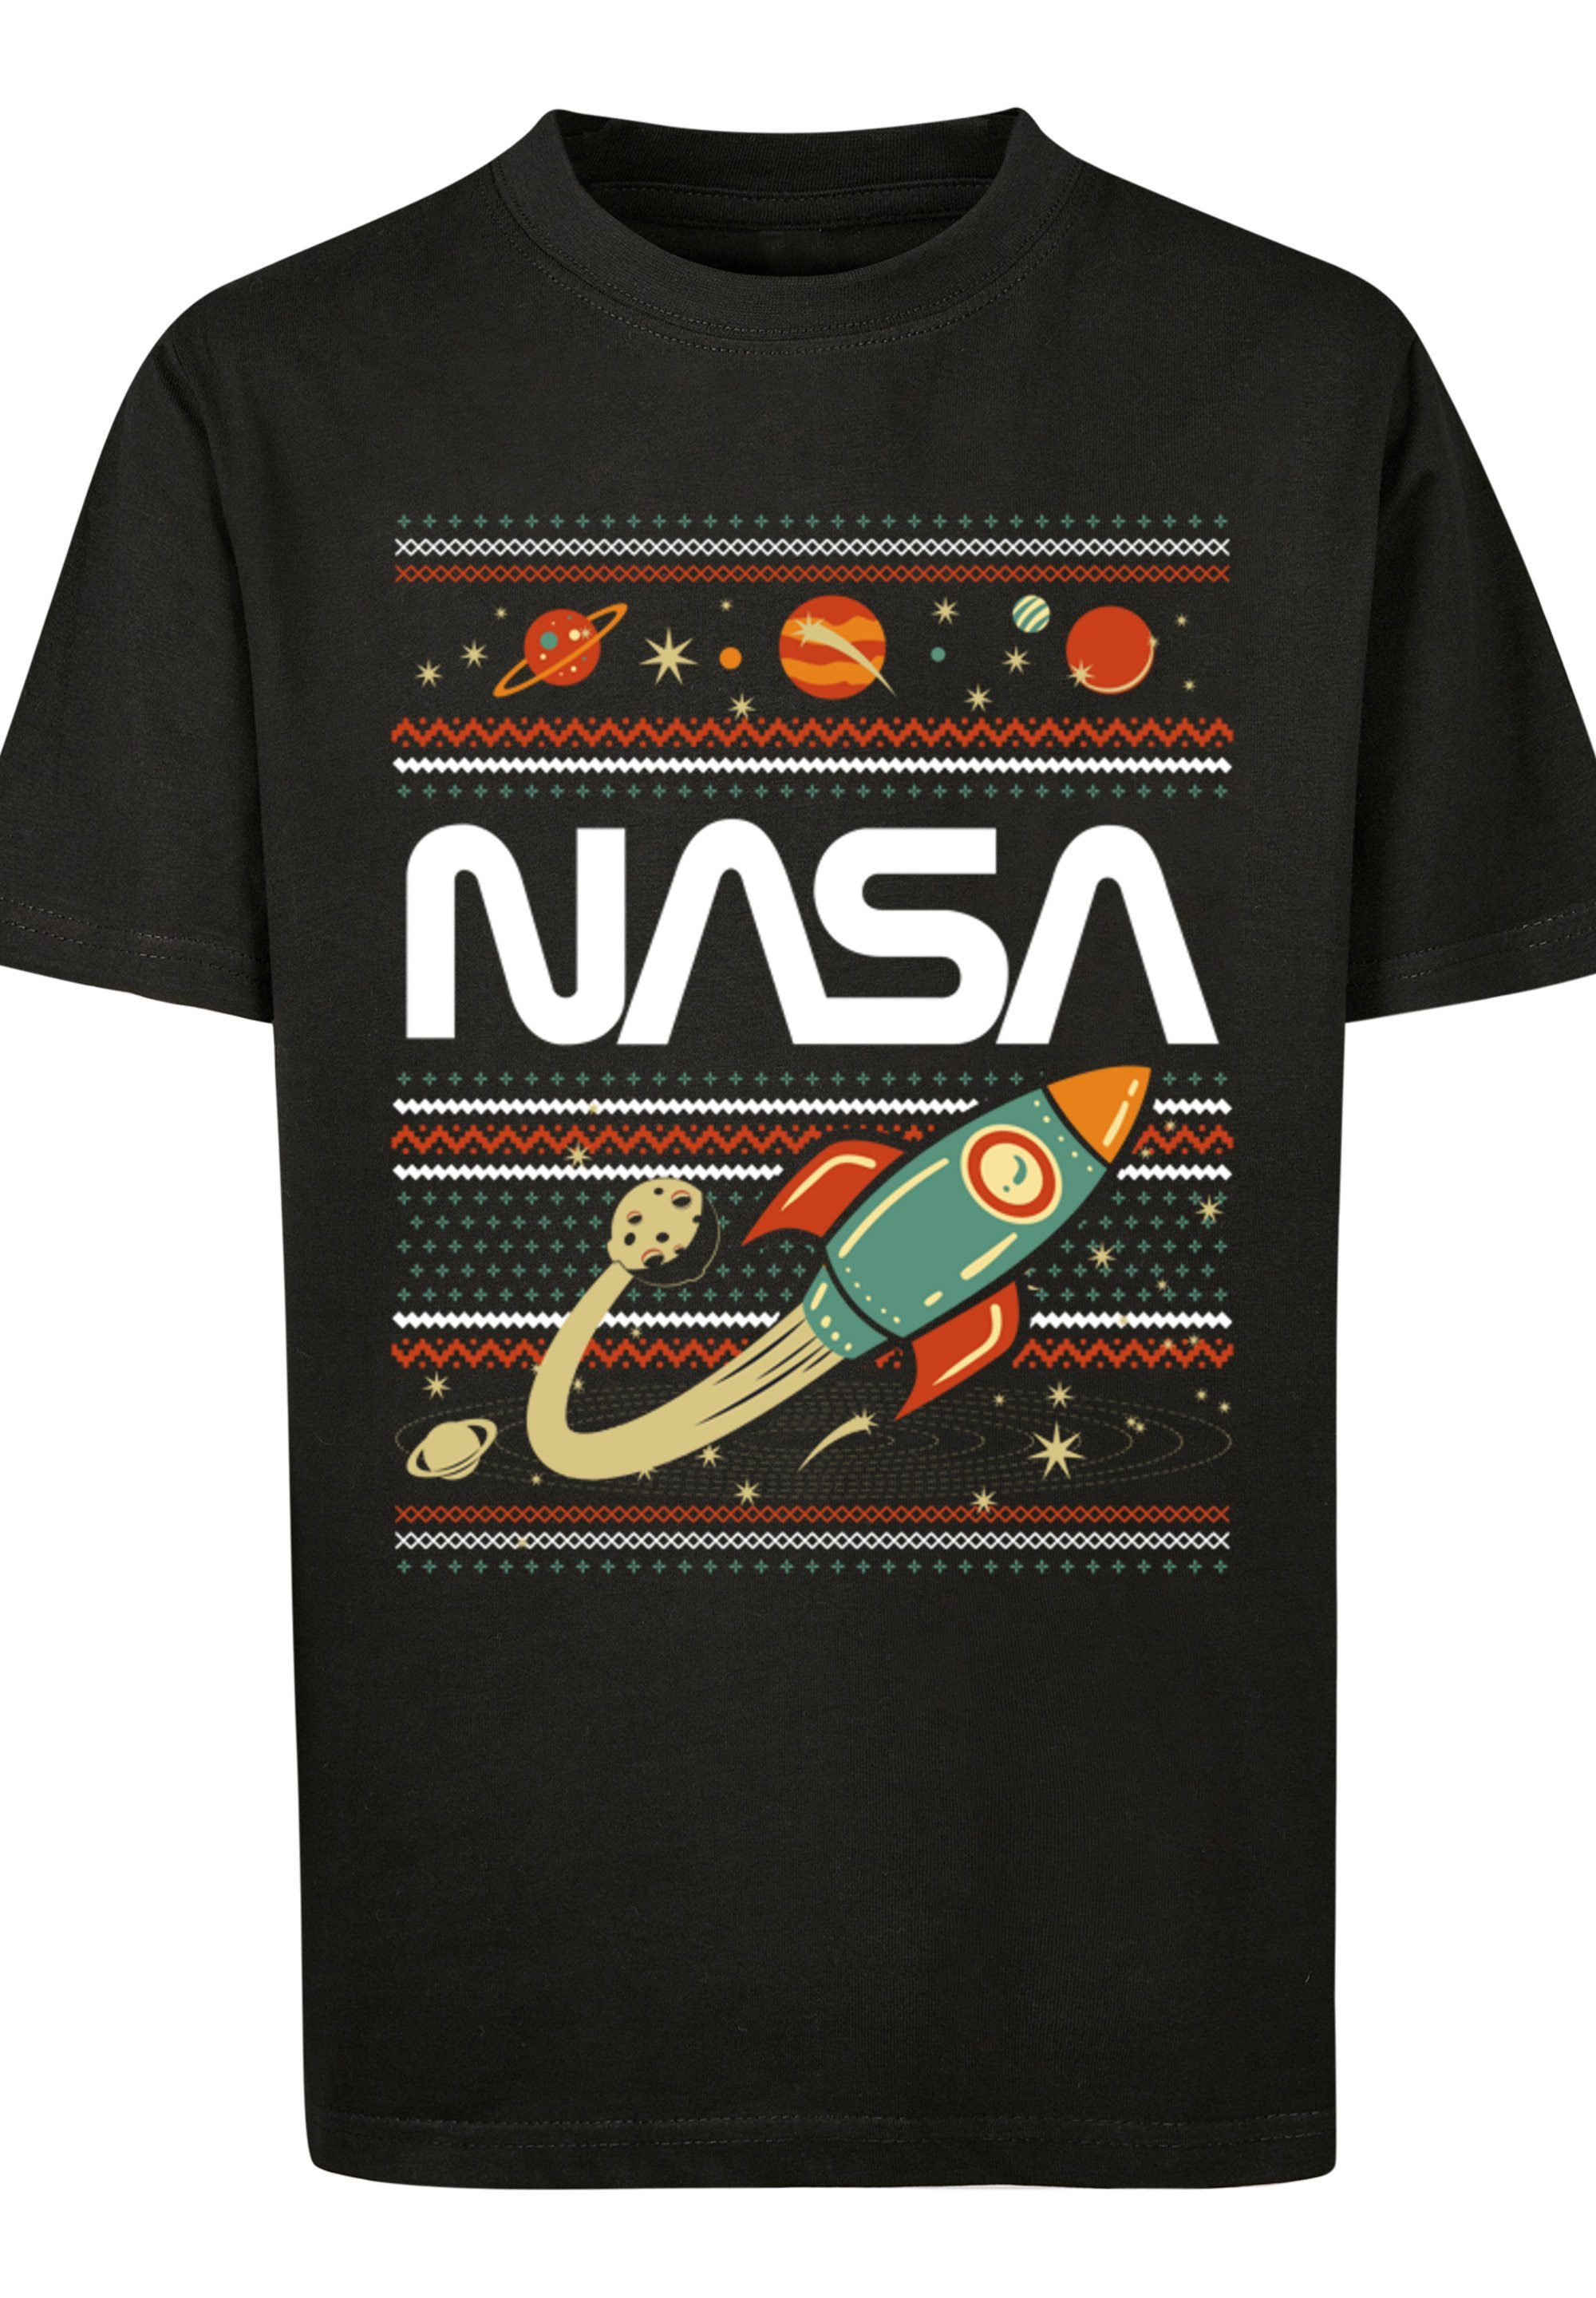 Unisex Bedruckt Kinder,Premium F4NT4STIC Fair Isle NASA T-Shirt Merch,Jungen,Mädchen,